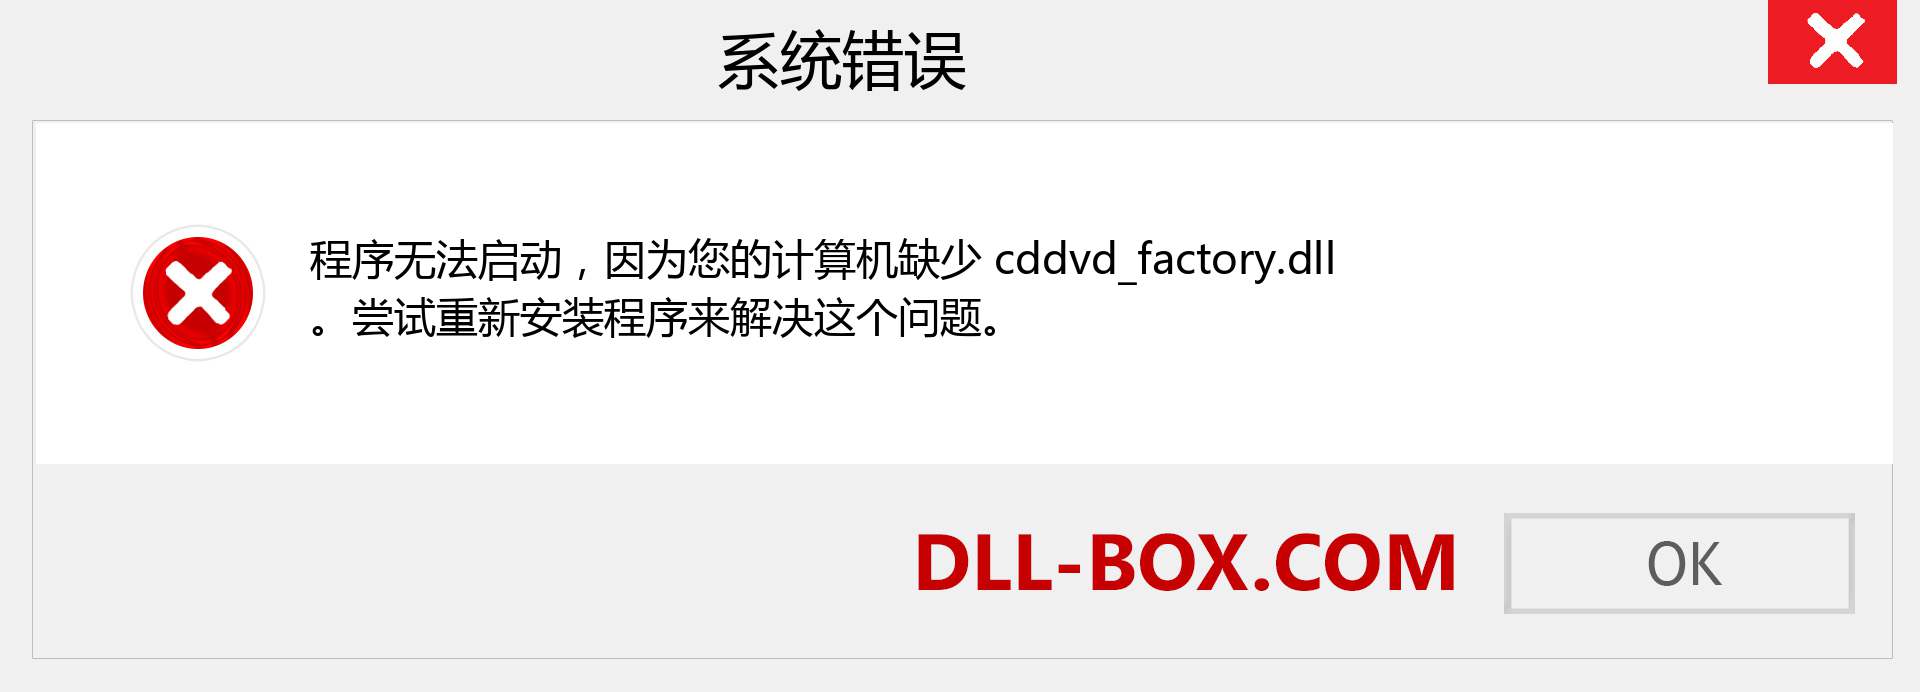 cddvd_factory.dll 文件丢失？。 适用于 Windows 7、8、10 的下载 - 修复 Windows、照片、图像上的 cddvd_factory dll 丢失错误